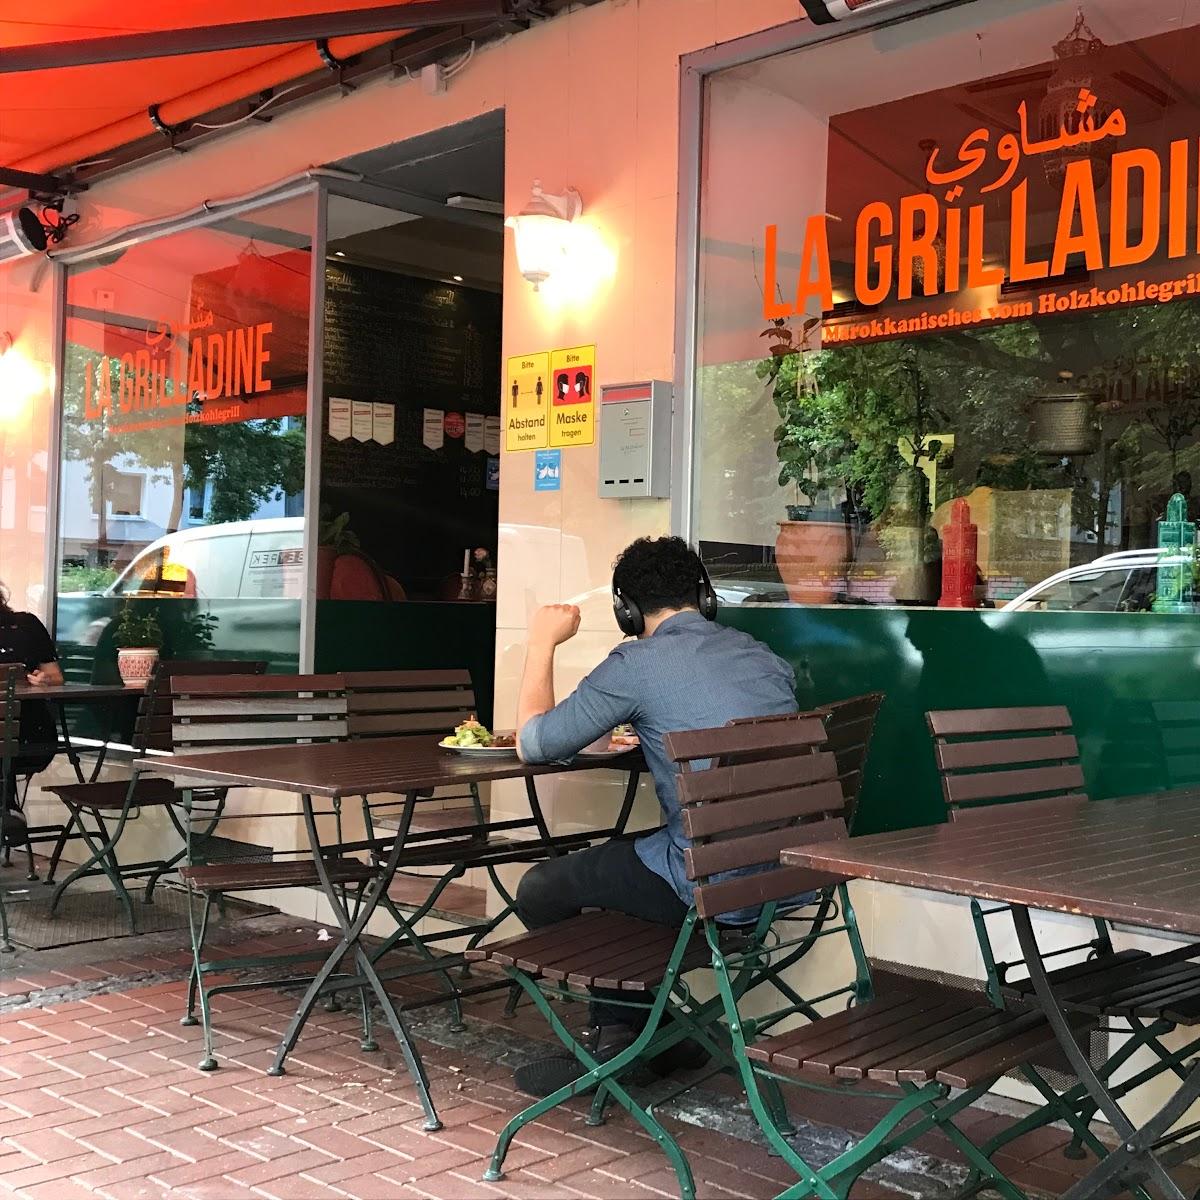 Restaurant "La Grilladine" in Düsseldorf